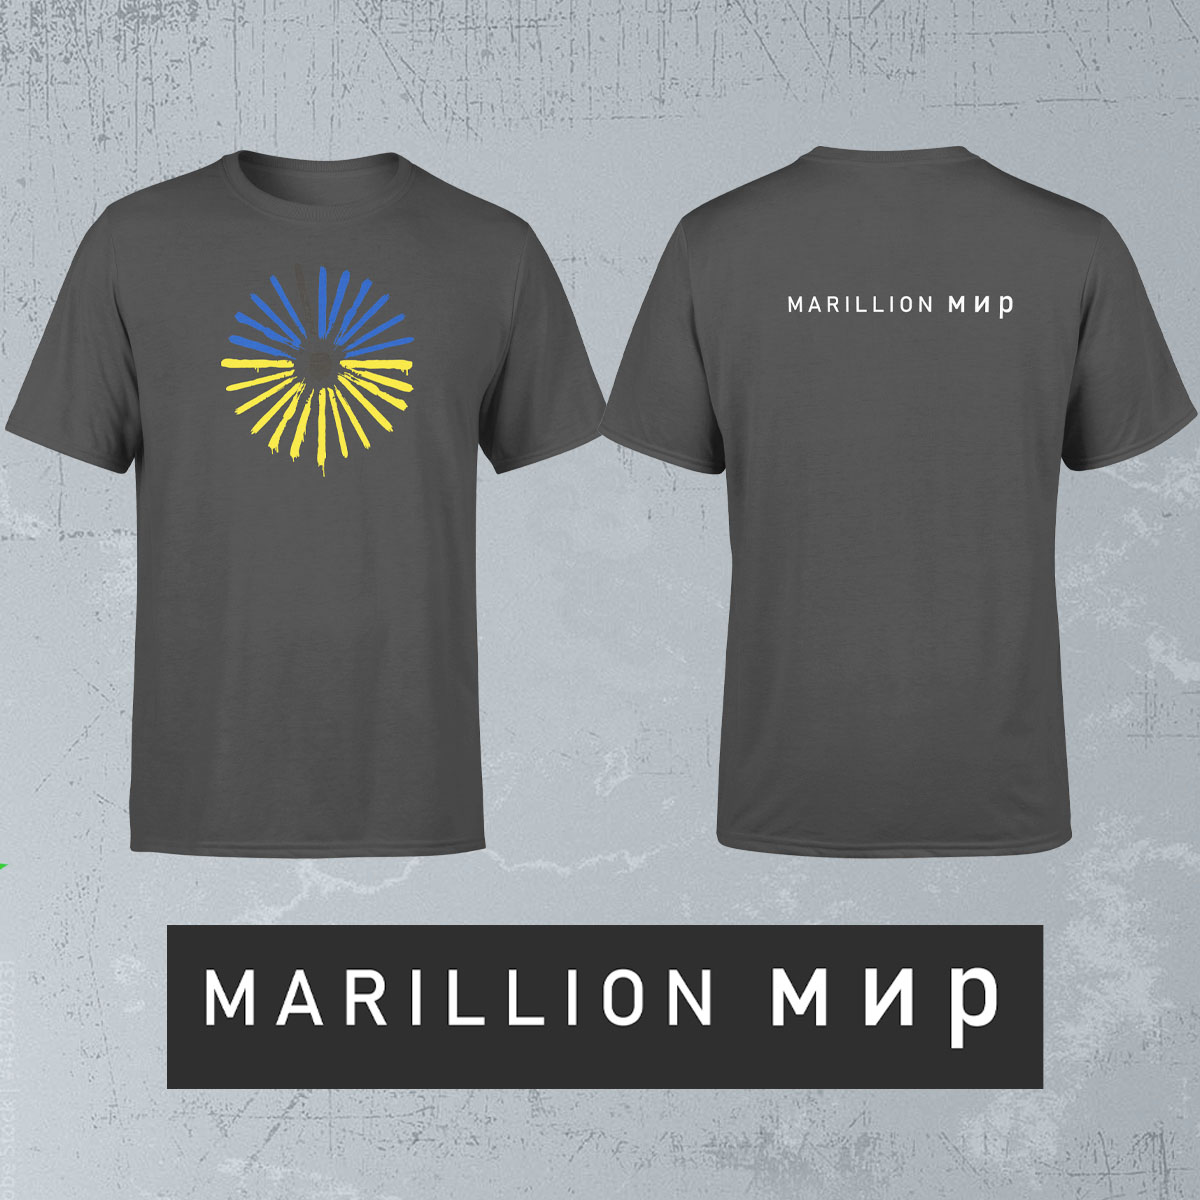 Marillion T Shirts raise money for Ukrainian Refugees